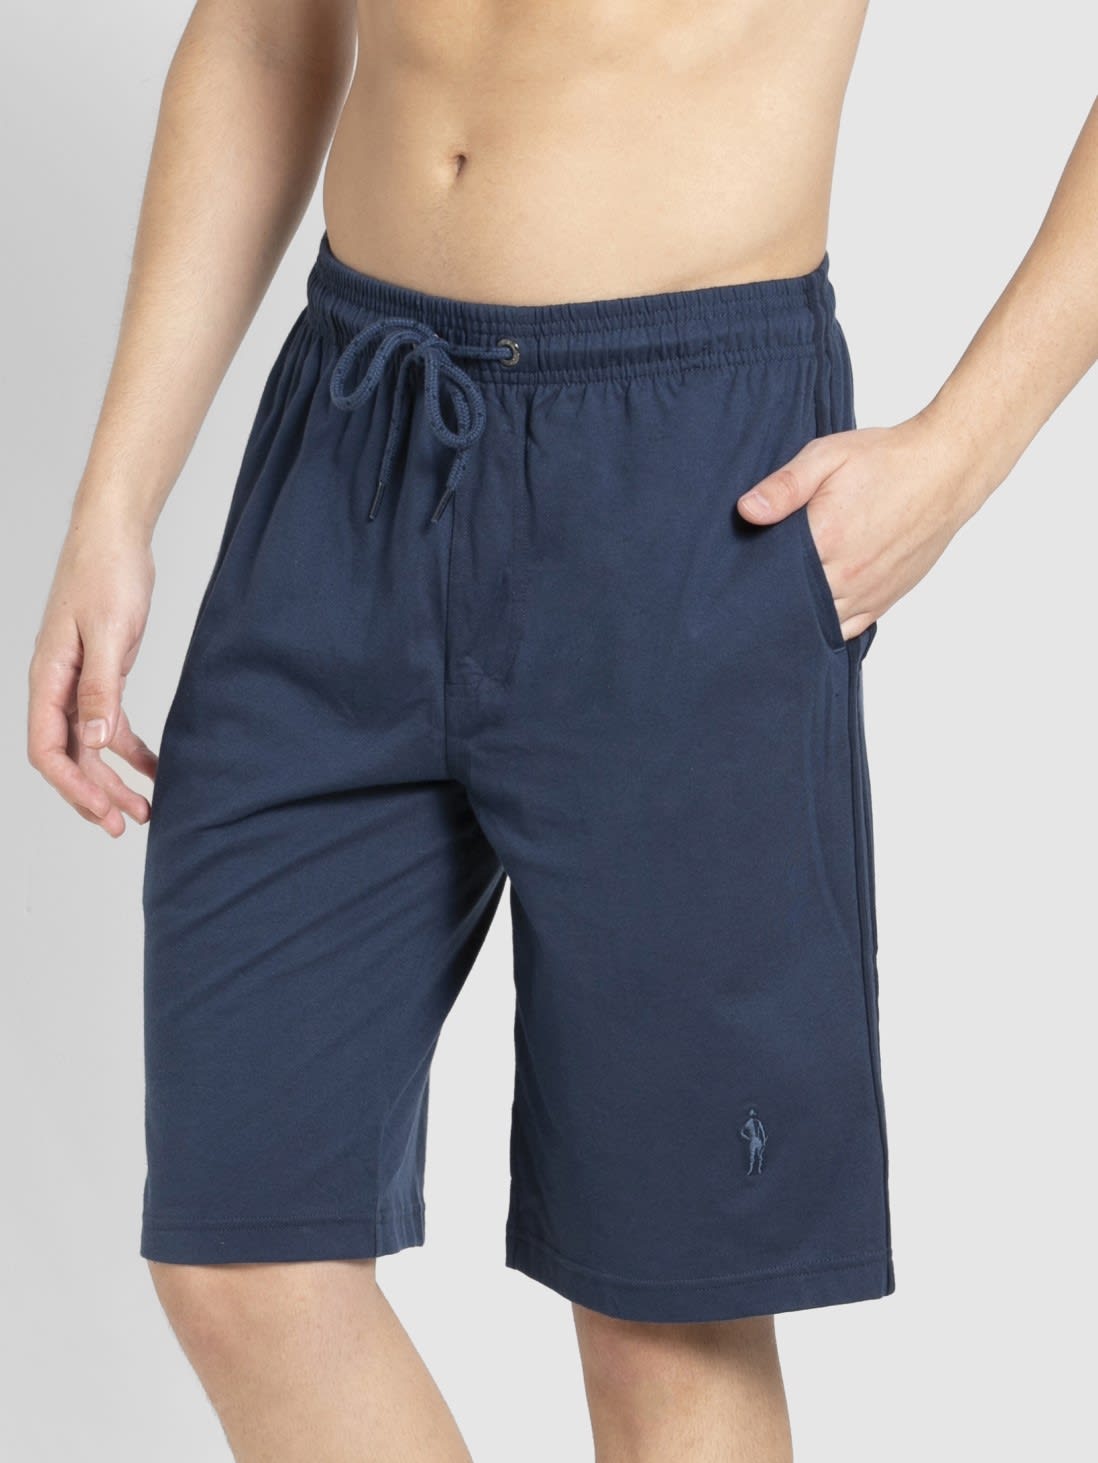 Jockey Men Apparel Bottoms | Insignia Blue & Navy Knit Sport Shorts